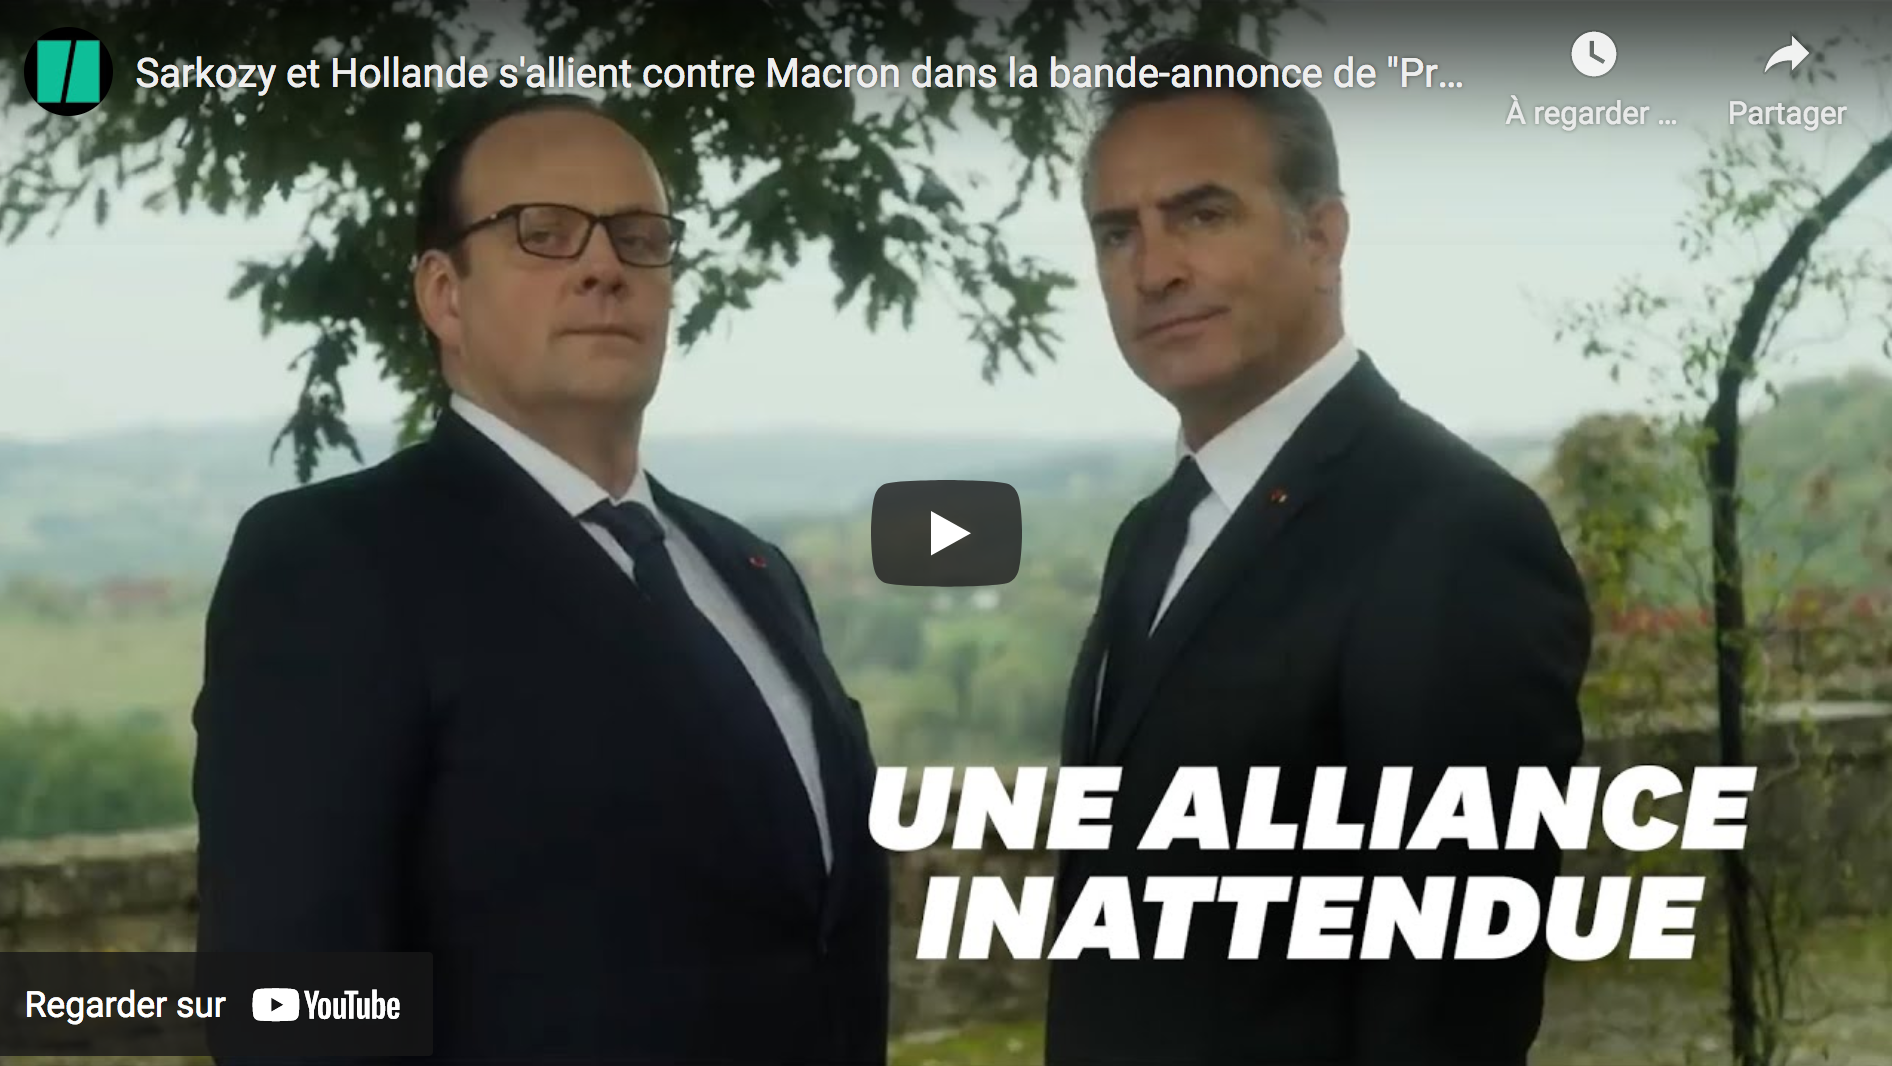 Sarkozy et Hollande s’allient contre Macron dans la bande-annonce de “Présidents”